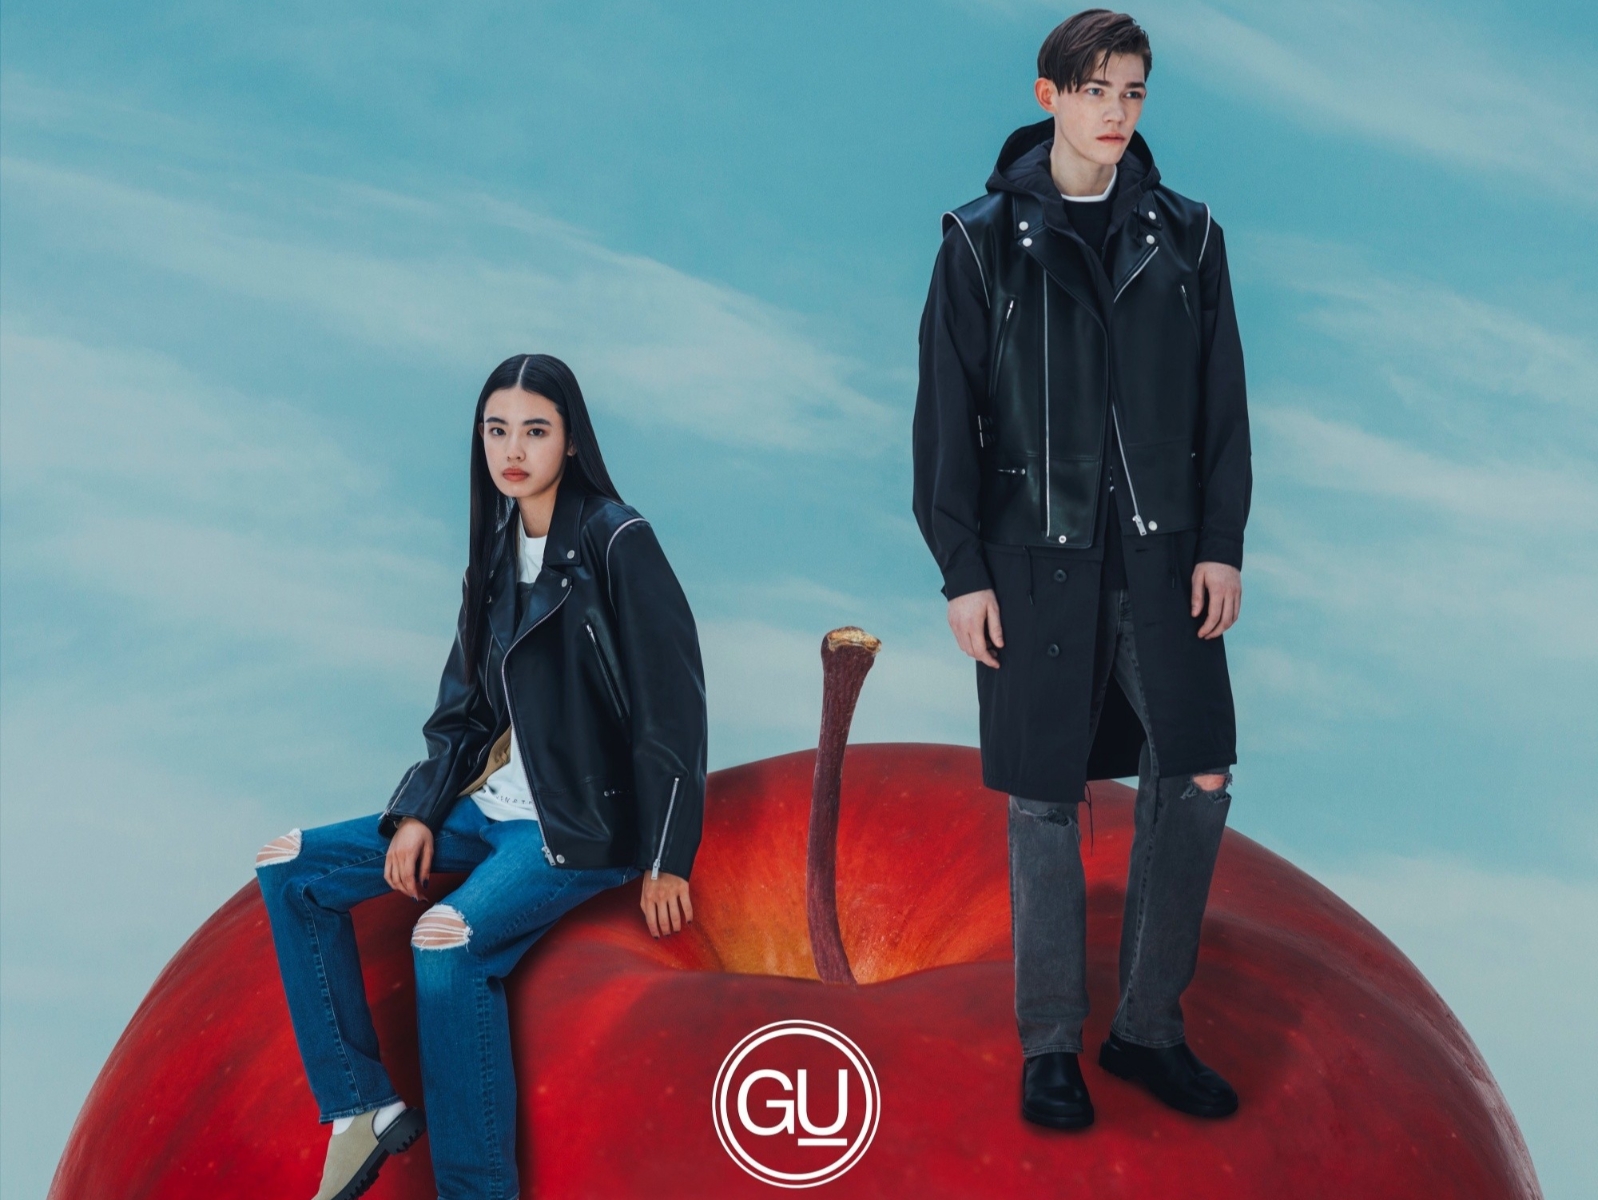 與獨一無二的時尚品牌「UNDERCOVER」睽違3年再度攜手合作，GU全新推出「GU X UNDERCOVER」聯名系列第三彈